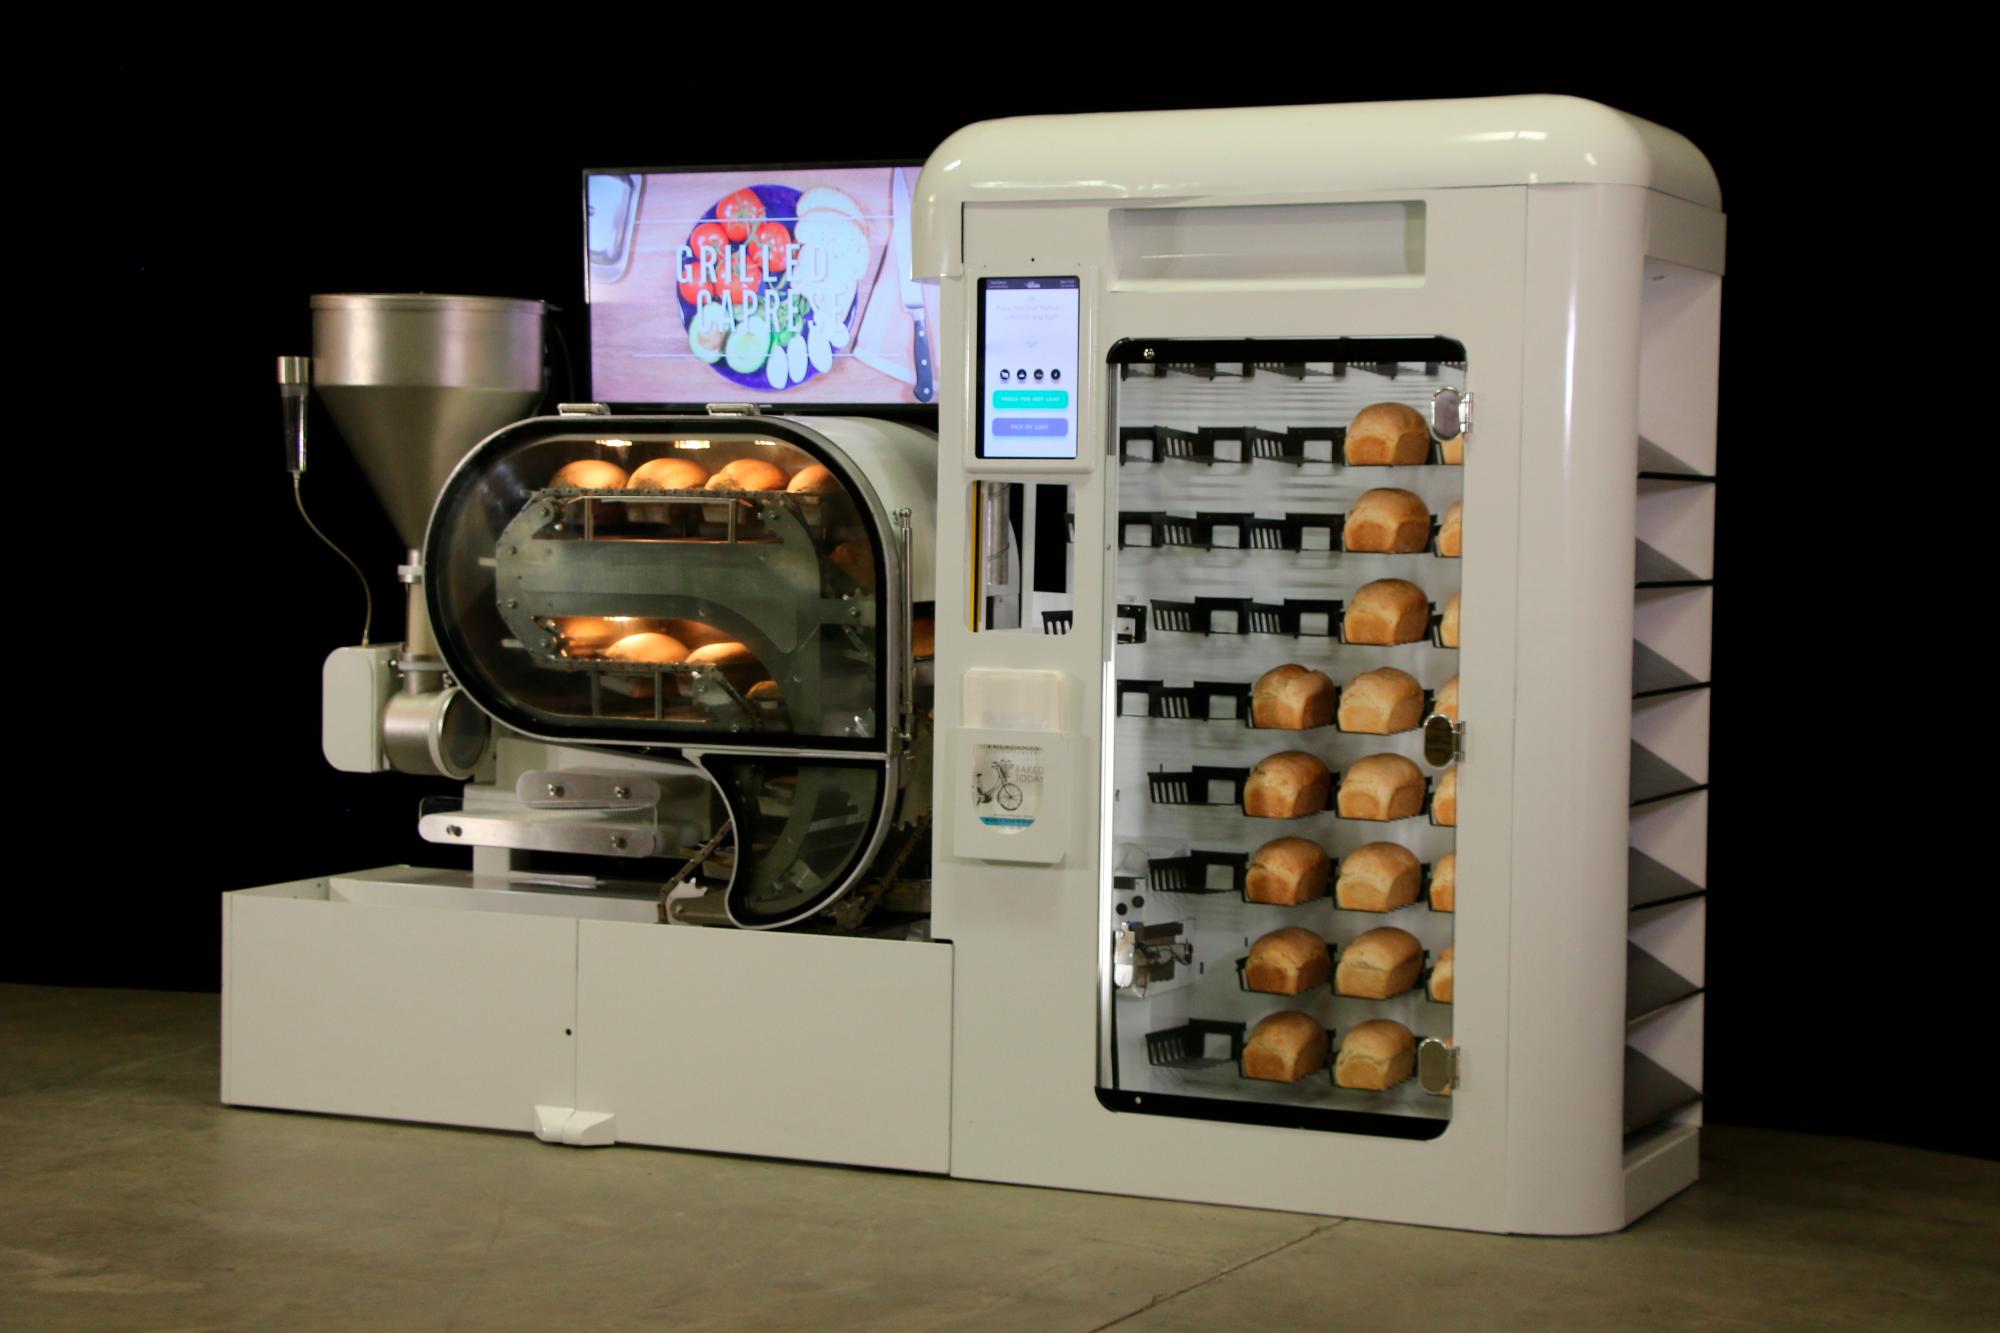 Detalle de la fabricación de los robots-panaderos.